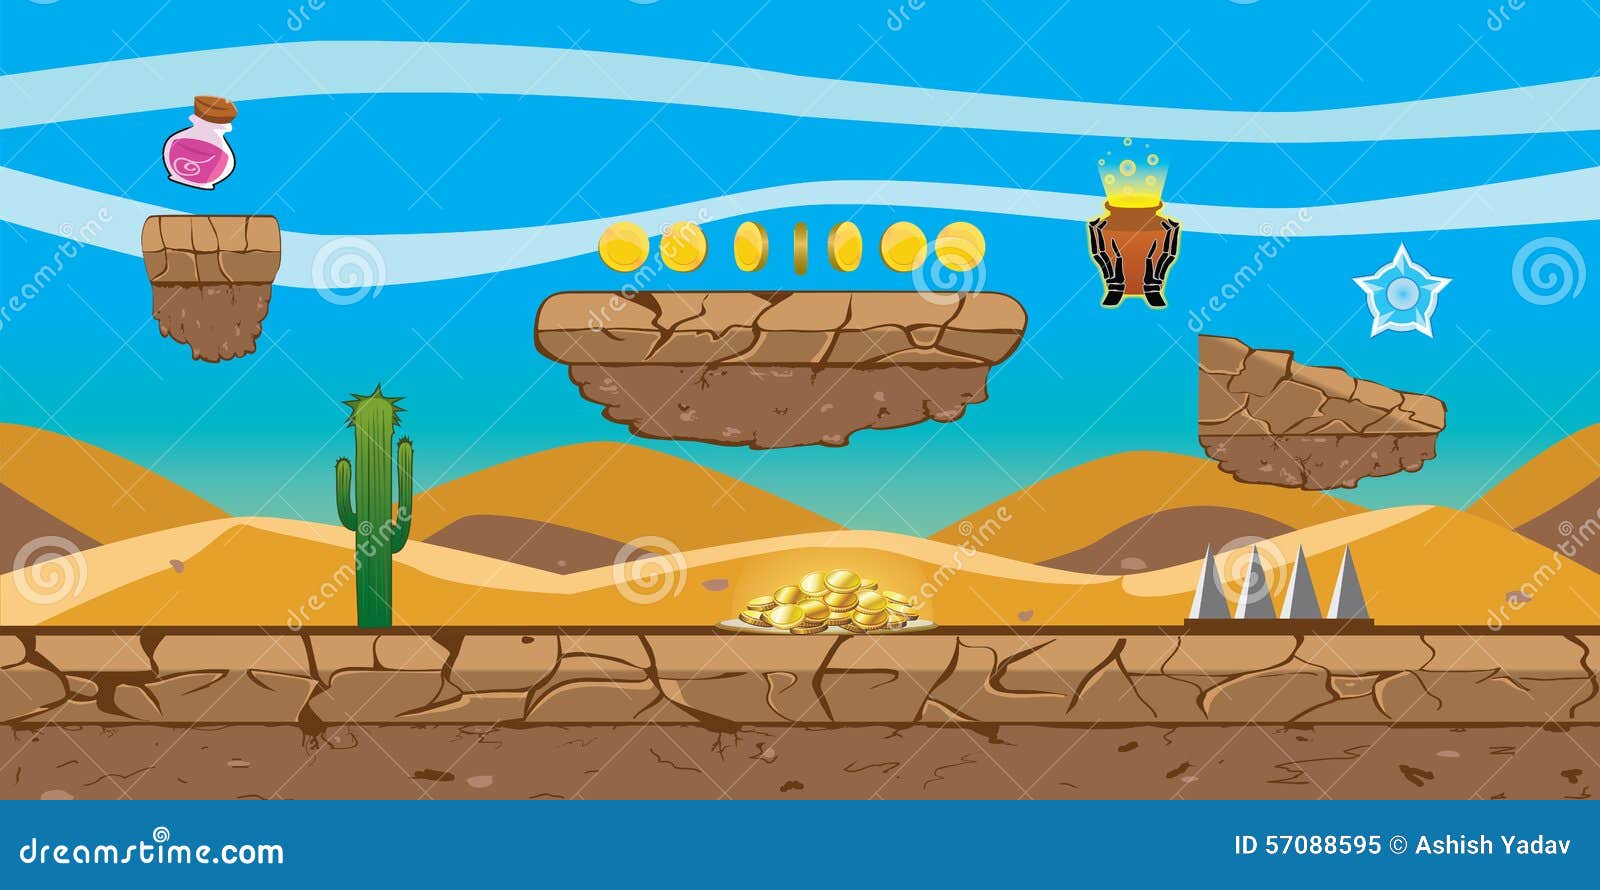 Hình nền game sa mạc: Với hình nền game sa mạc, bạn sẽ được chìm đắm vào vùng đất bạt ngàn hoang vu, những bức tranh hùng vĩ màu cam đang chờ bạn khám phá. Hãy ngắm nhìn và cảm nhận cảm giác thú vị khi chơi game trên hình nền này.